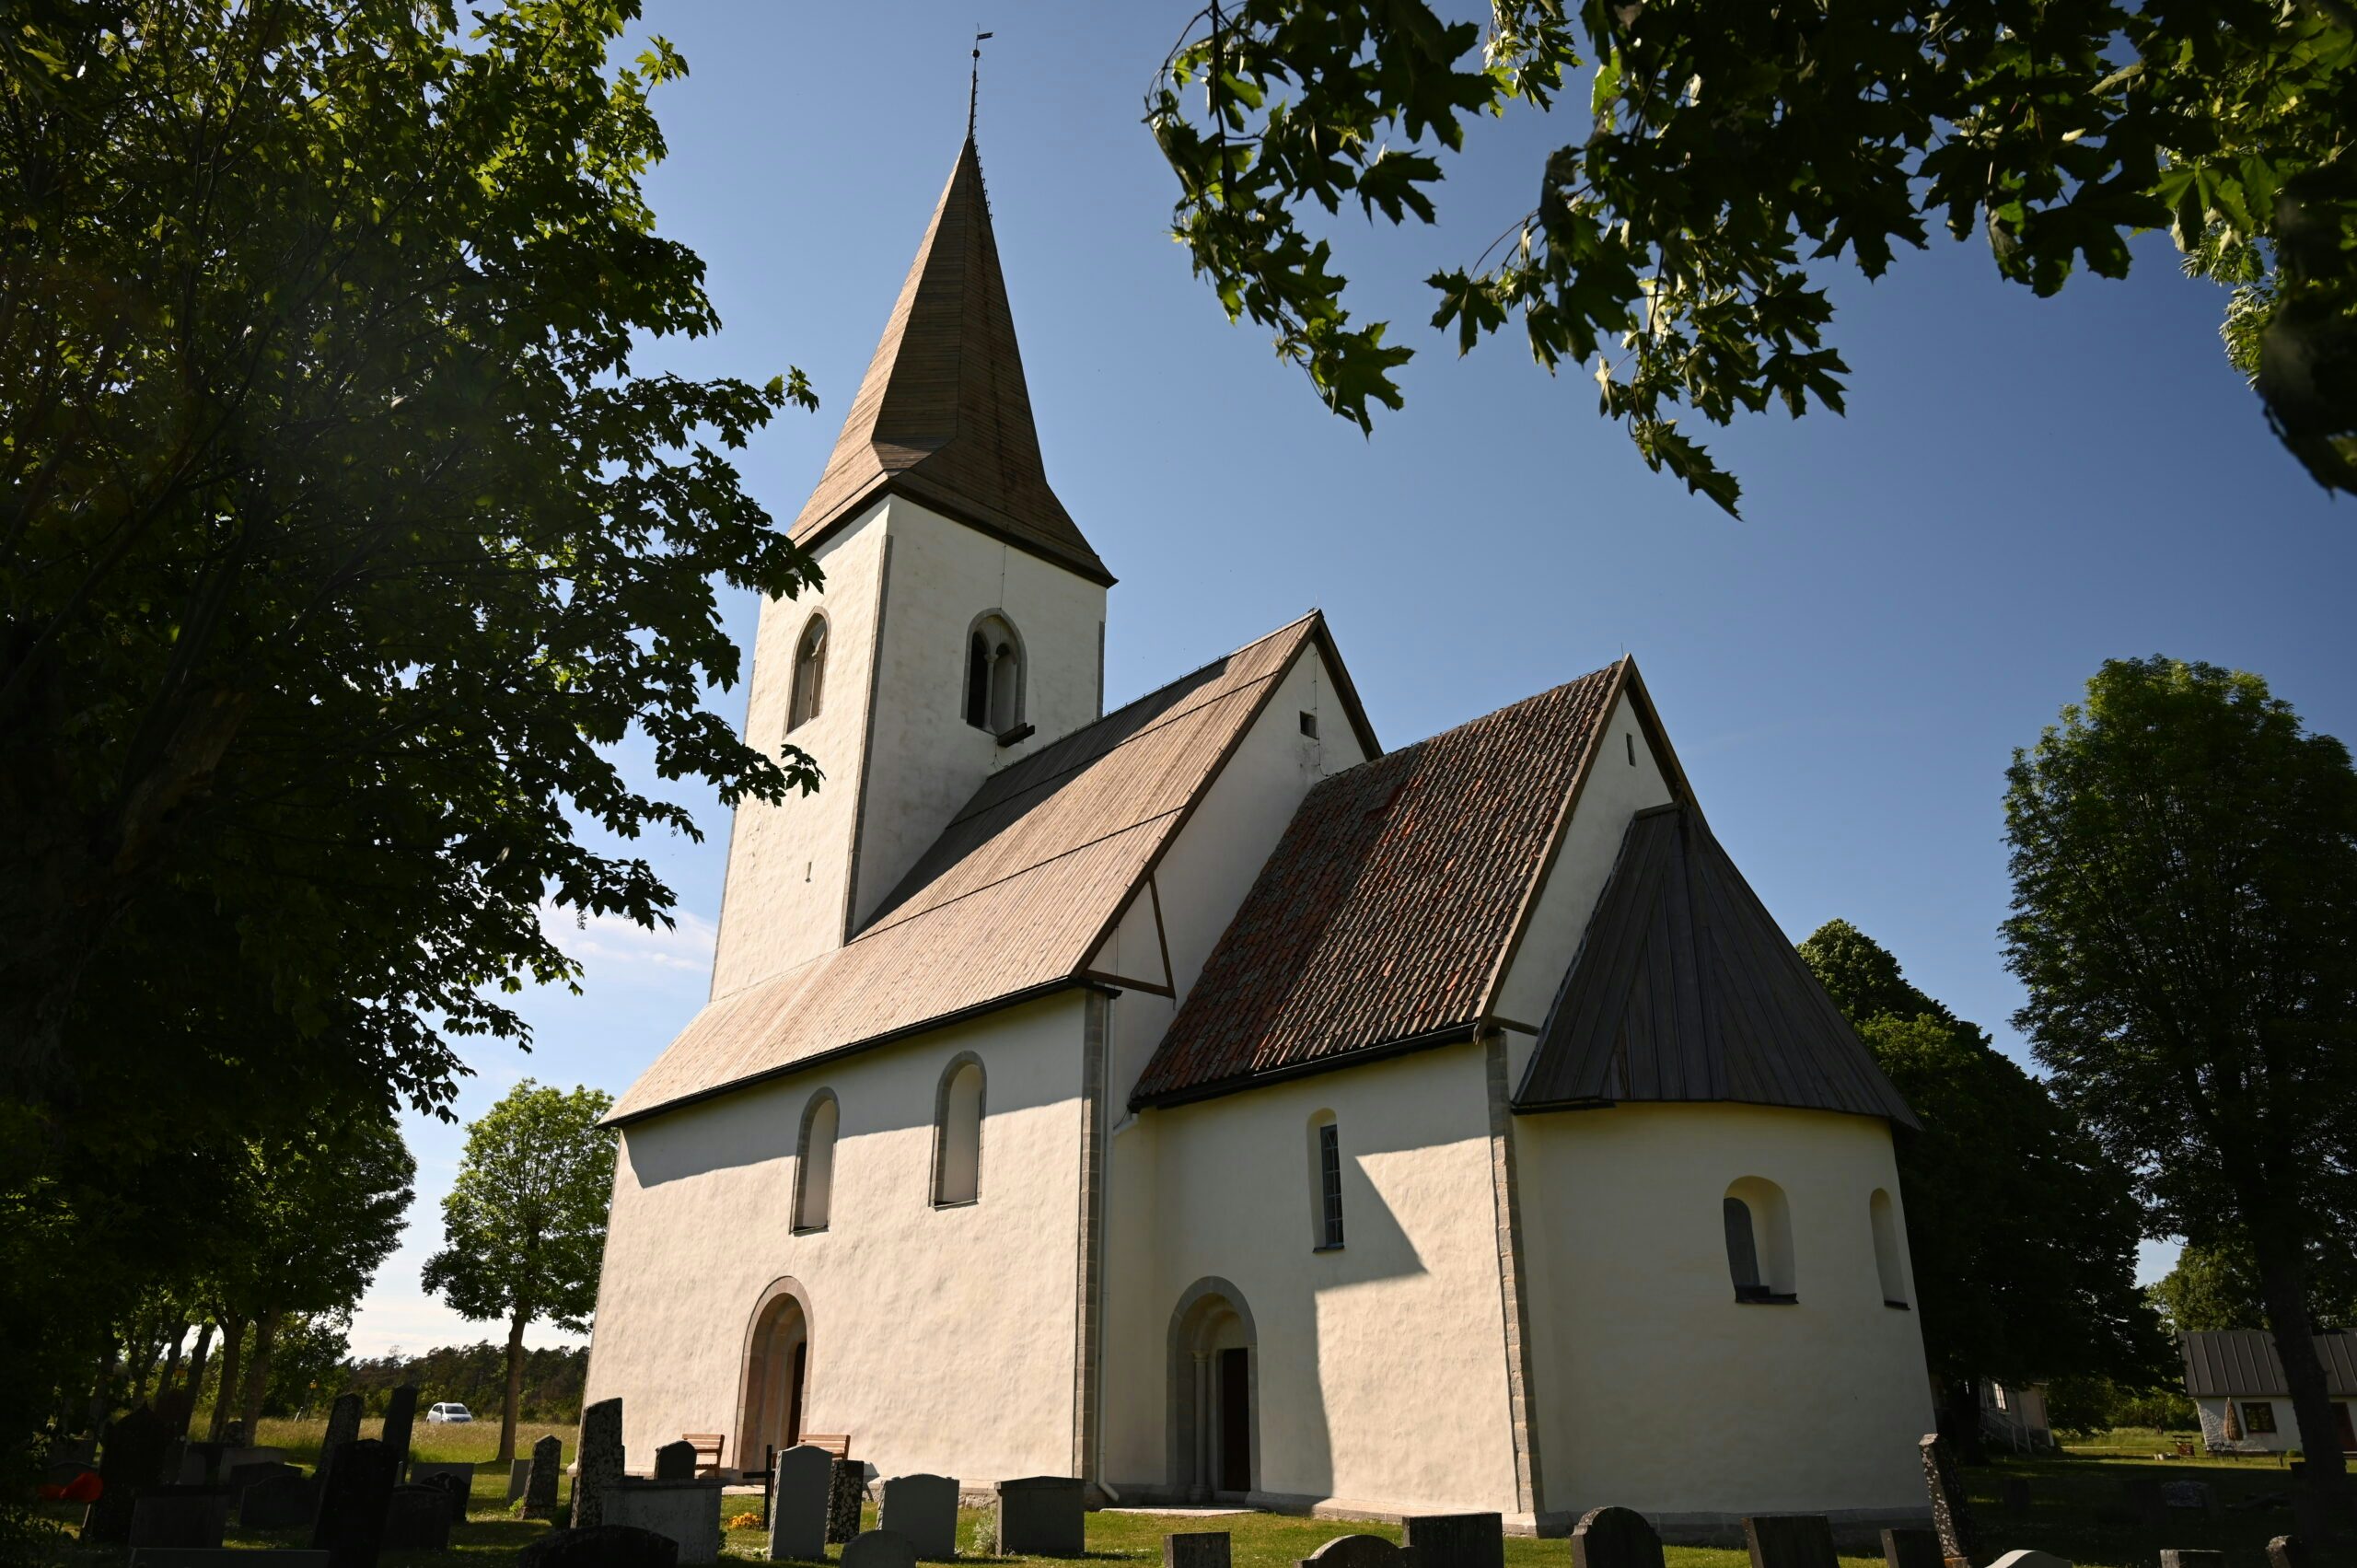 Hejdeby kyrka på mellersta Gotland